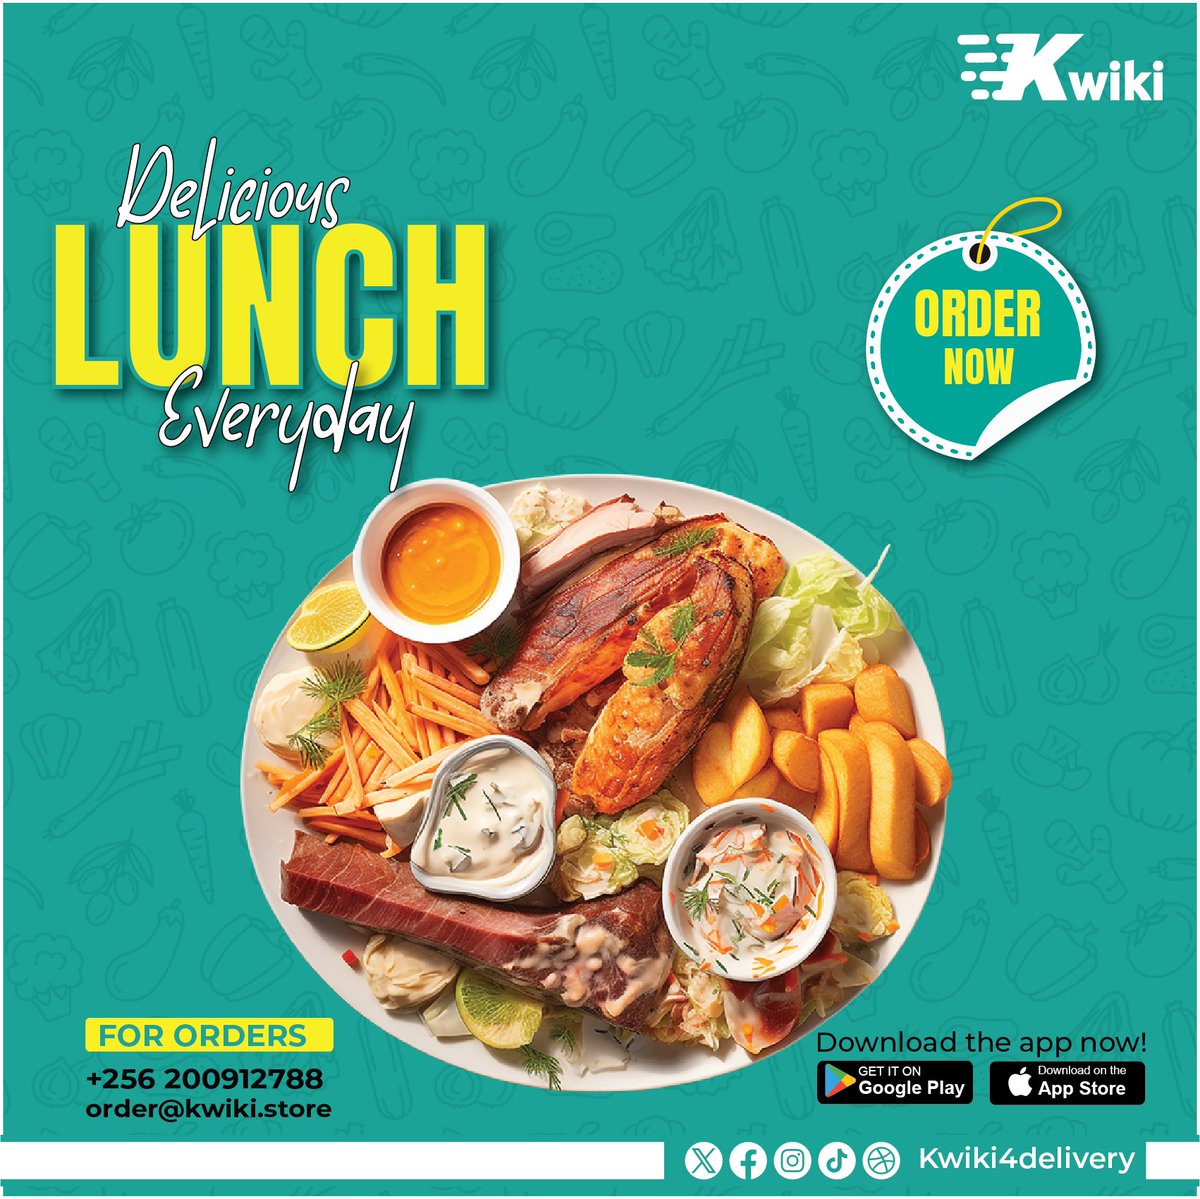 Make lunchtime a delight with Kwiki every day!

#kwikidelivery #kwiki #opennow #alwaysontime #doitquickwithkwiki #uganda #food #foodporn #fooddelivery #fastdelivery #itskwiki #fy #ordernow #lunch #fooddelicious #ordereveryday #ordernow